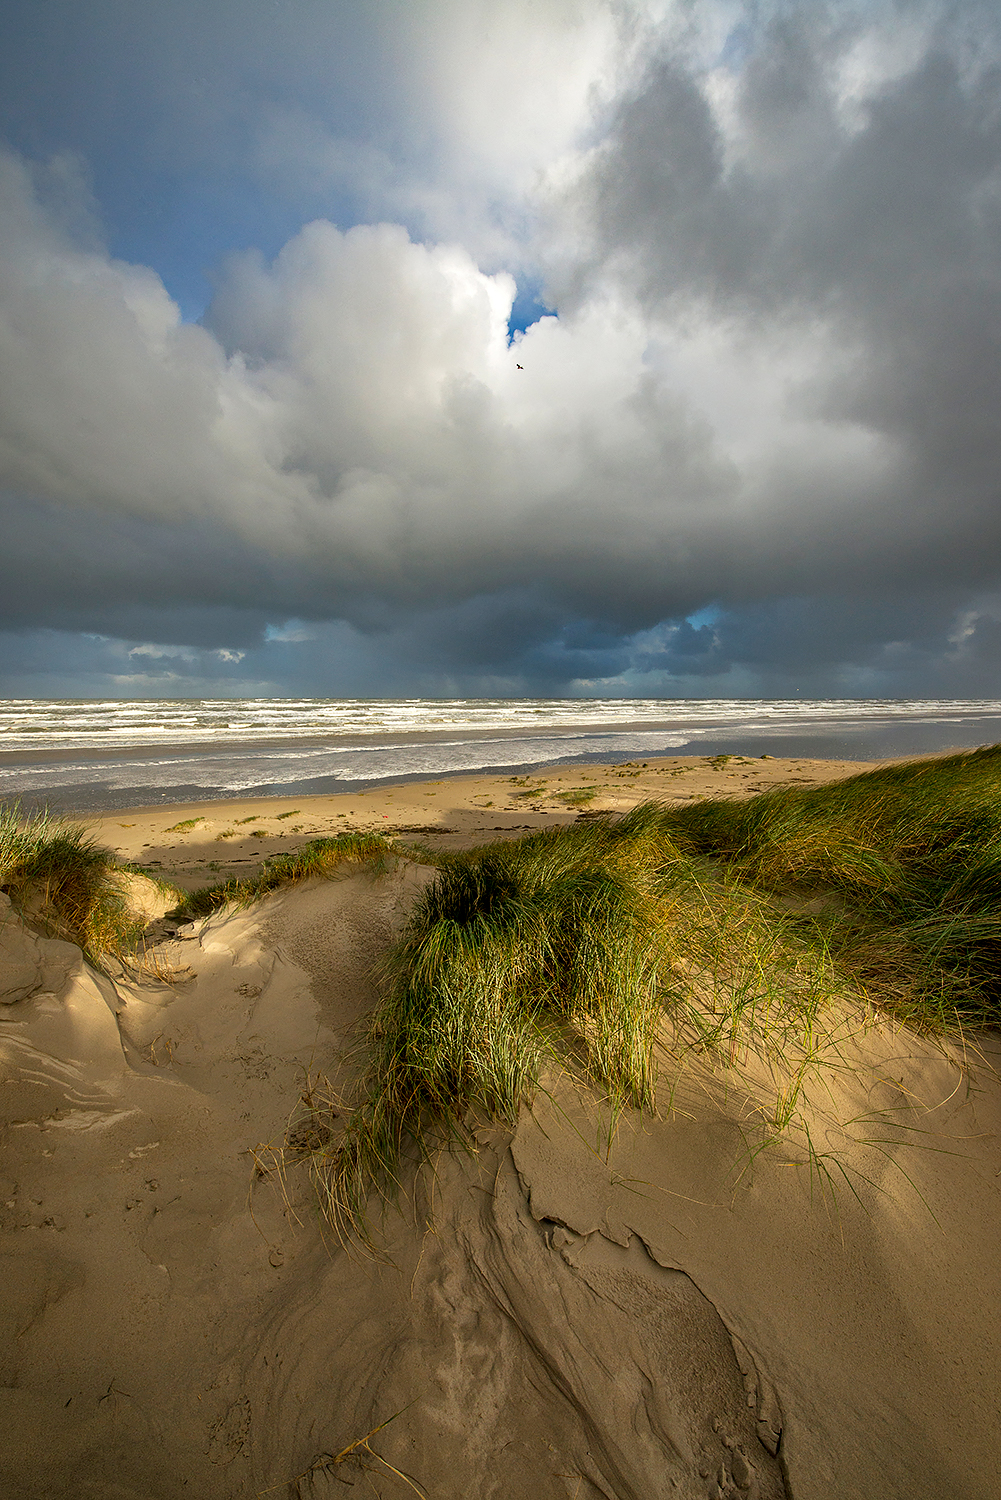 Harde wind en dreigende wolkenluchten boven zee tijds zonsopkomst op het strand van Wijk aan Zee